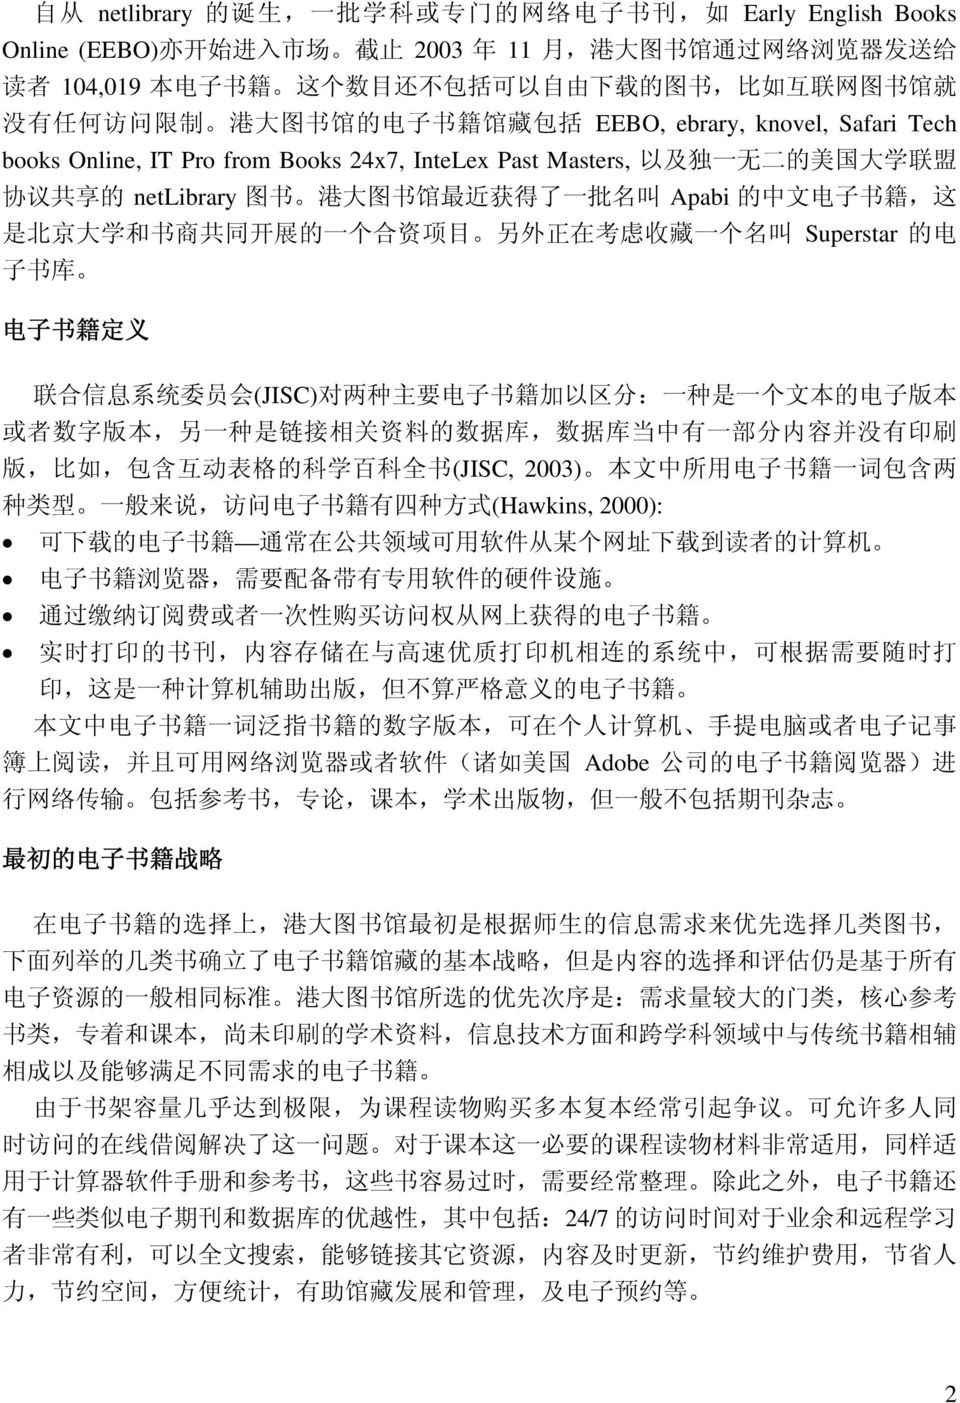 netlibrary 图 书 港 大 图 书 馆 最 近 获 得 了 一 批 名 叫 Apabi 的 中 文 电 子 书 籍, 这 是 北 京 大 学 和 书 商 共 同 开 展 的 一 个 合 资 项 目 另 外 正 在 考 虑 收 藏 一 个 名 叫 Superstar 的 电 子 书 库 电 子 书 籍 定 义 联 合 信 息 系 统 委 员 会 (JISC) 对 两 种 主 要 电 子